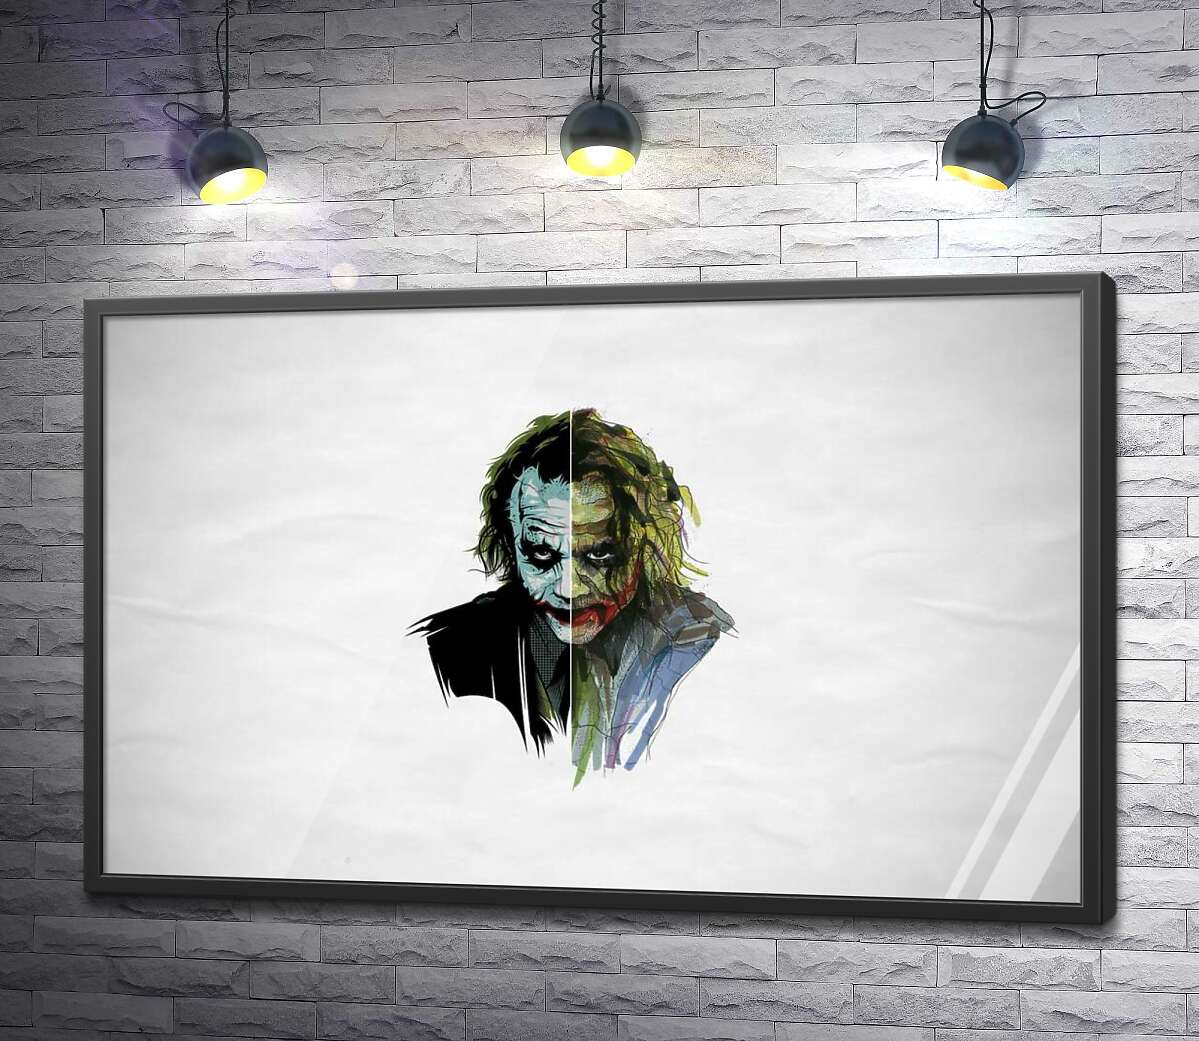 постер Арт-портрет Джокера (Joker) с угрожающим взглядом